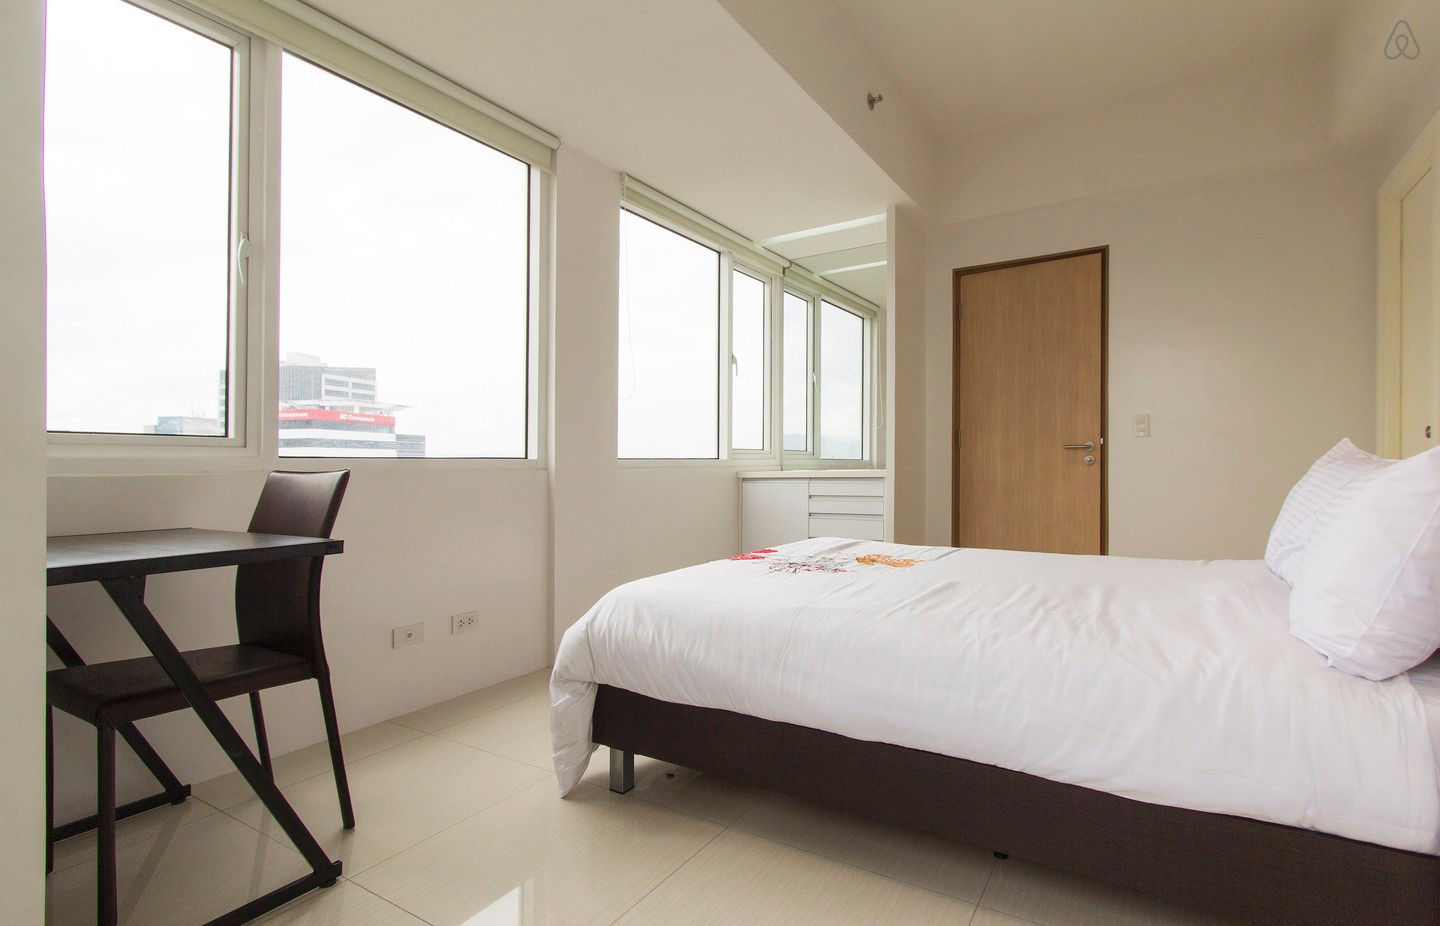 RC206 1 Bedroom Condo for Rent in Cebu Business Park Cebu City Cebu Grand Realty (6)